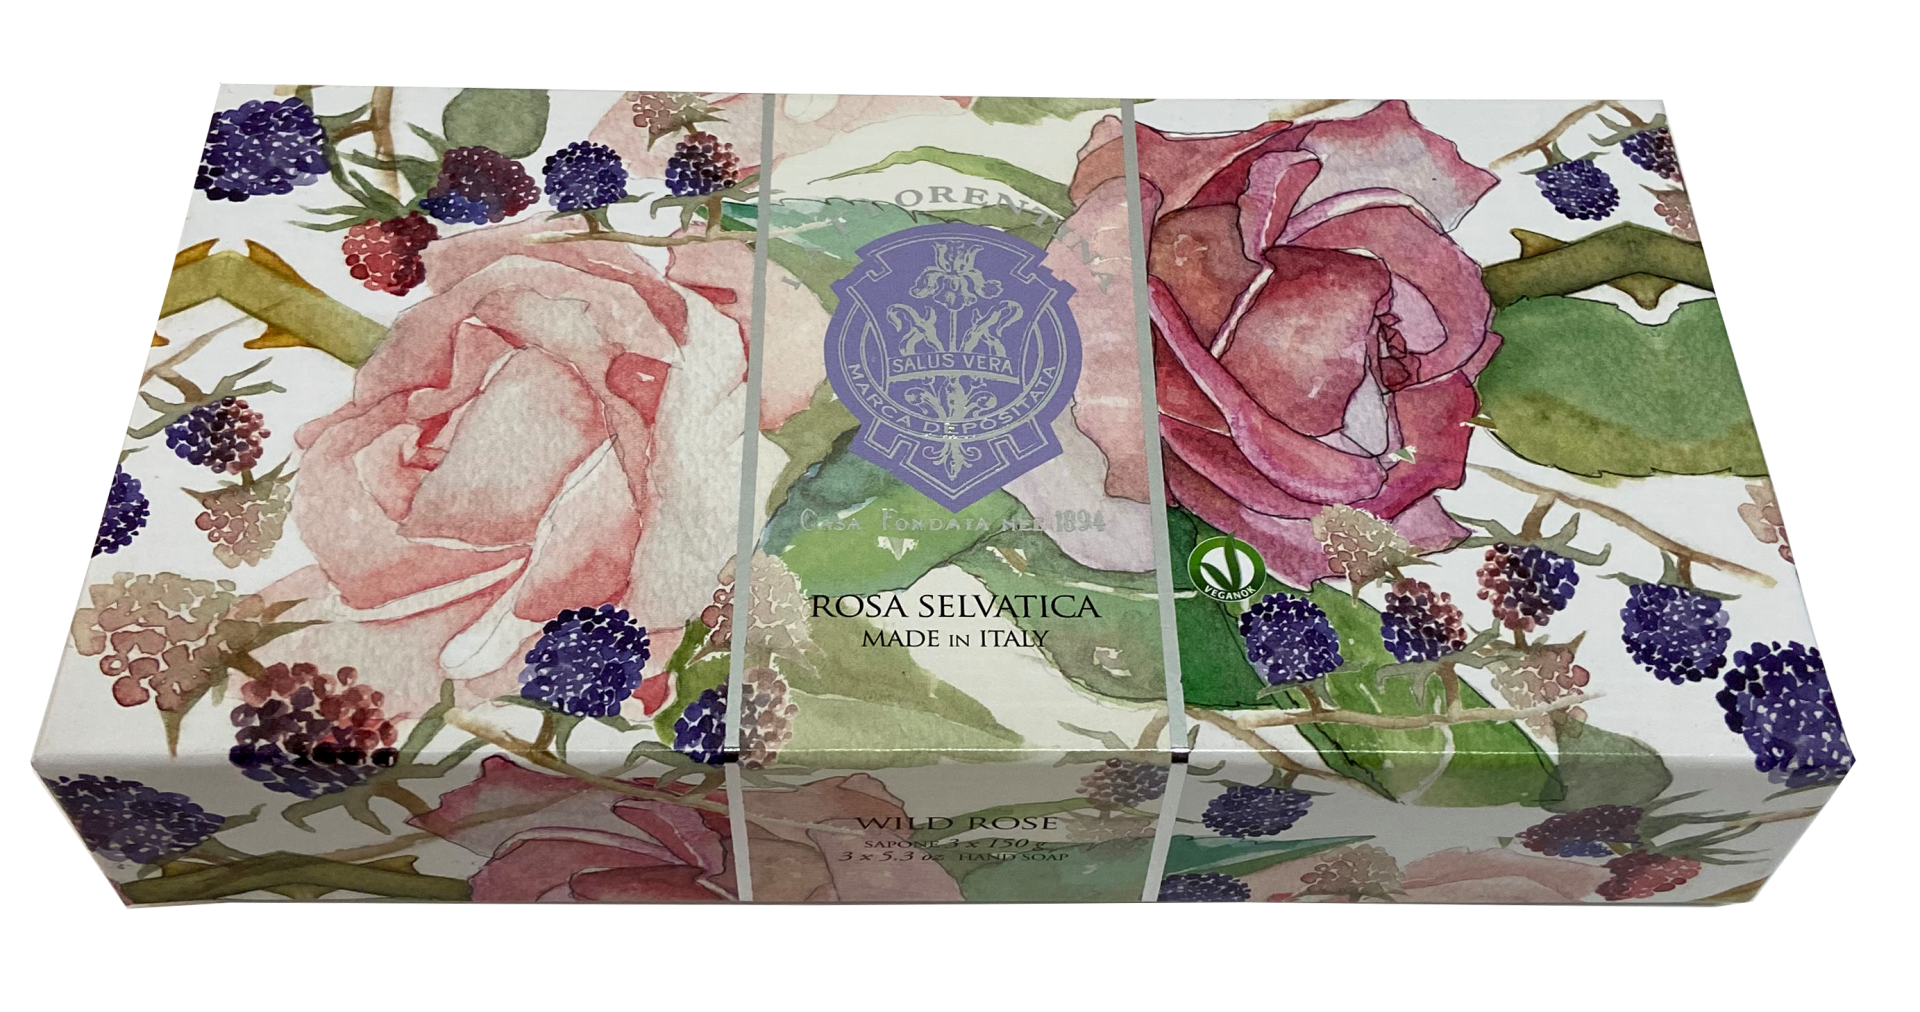 La Florentina zeep 3 x 150g Wilde roos